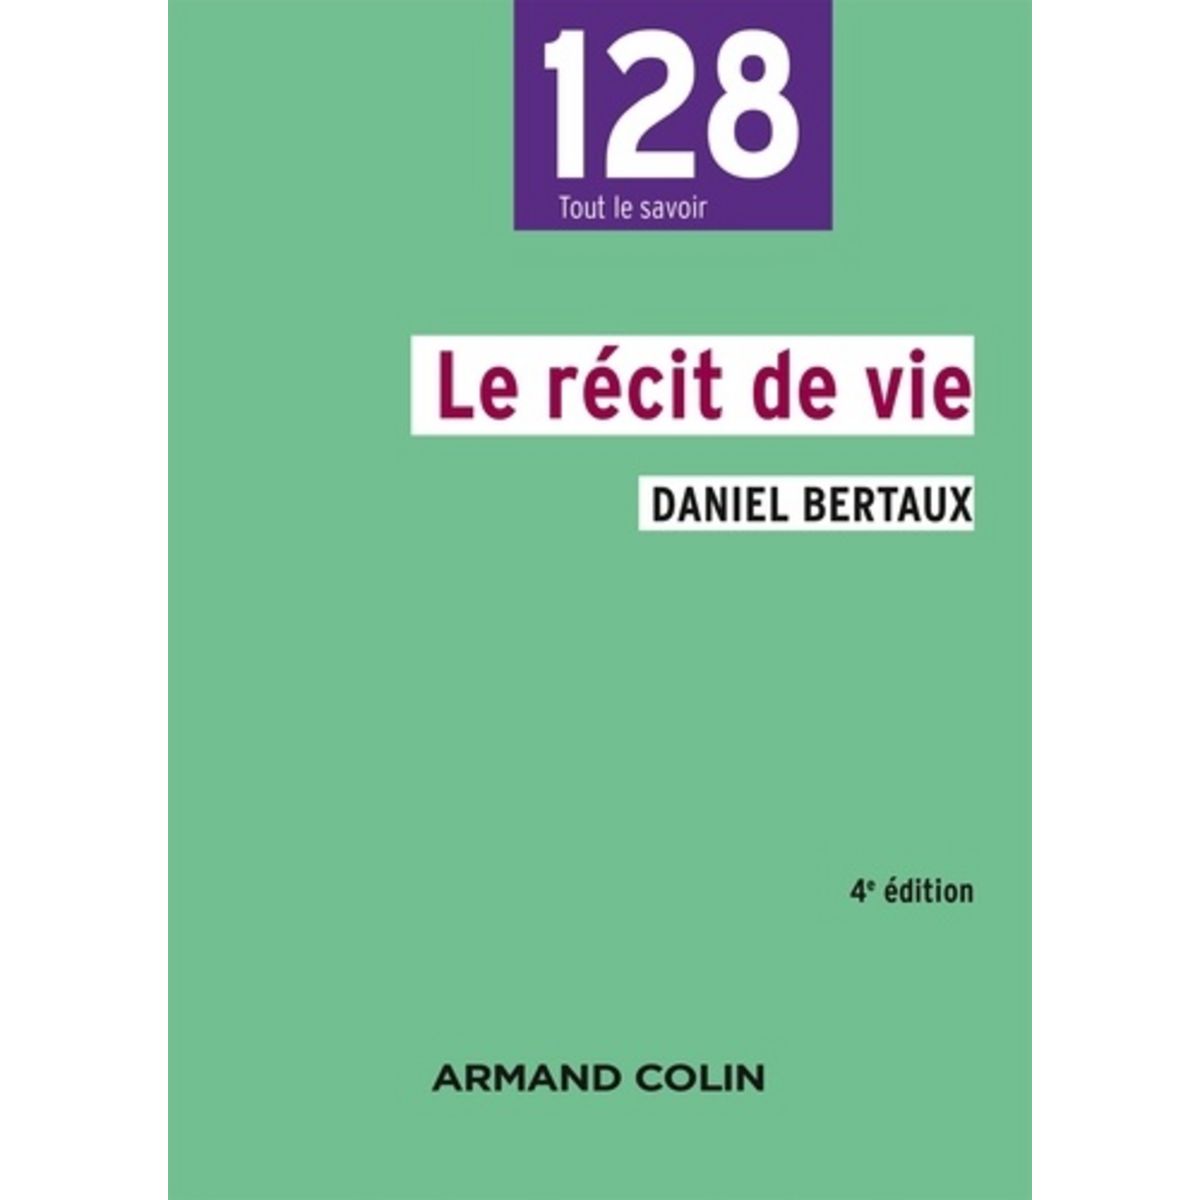  LE RECIT DE VIE. 4E EDITION, Bertaux Daniel